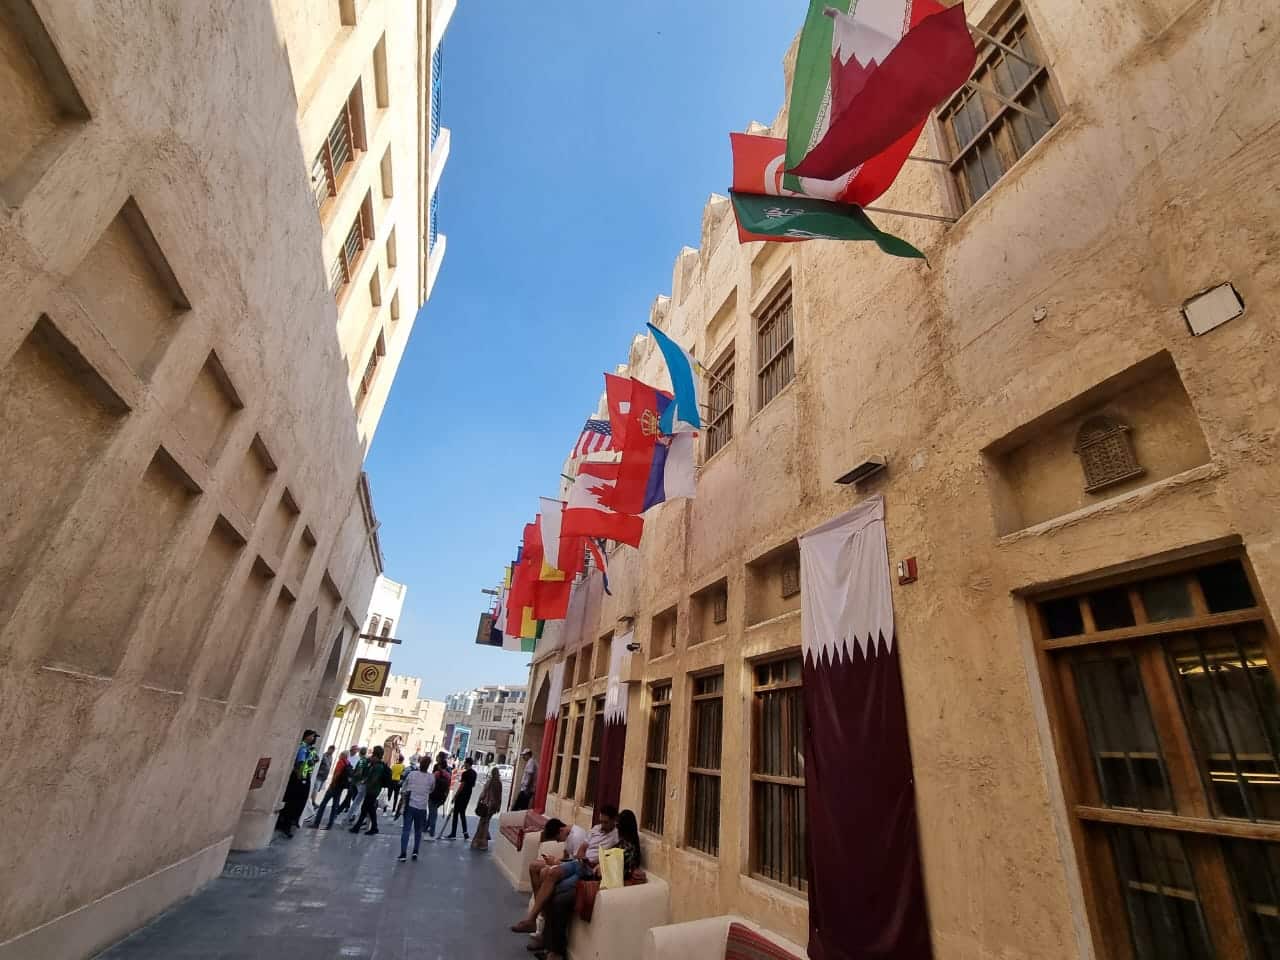 El viernes es el día sagrado en Catar: oración y oficinas y comercios cerrados